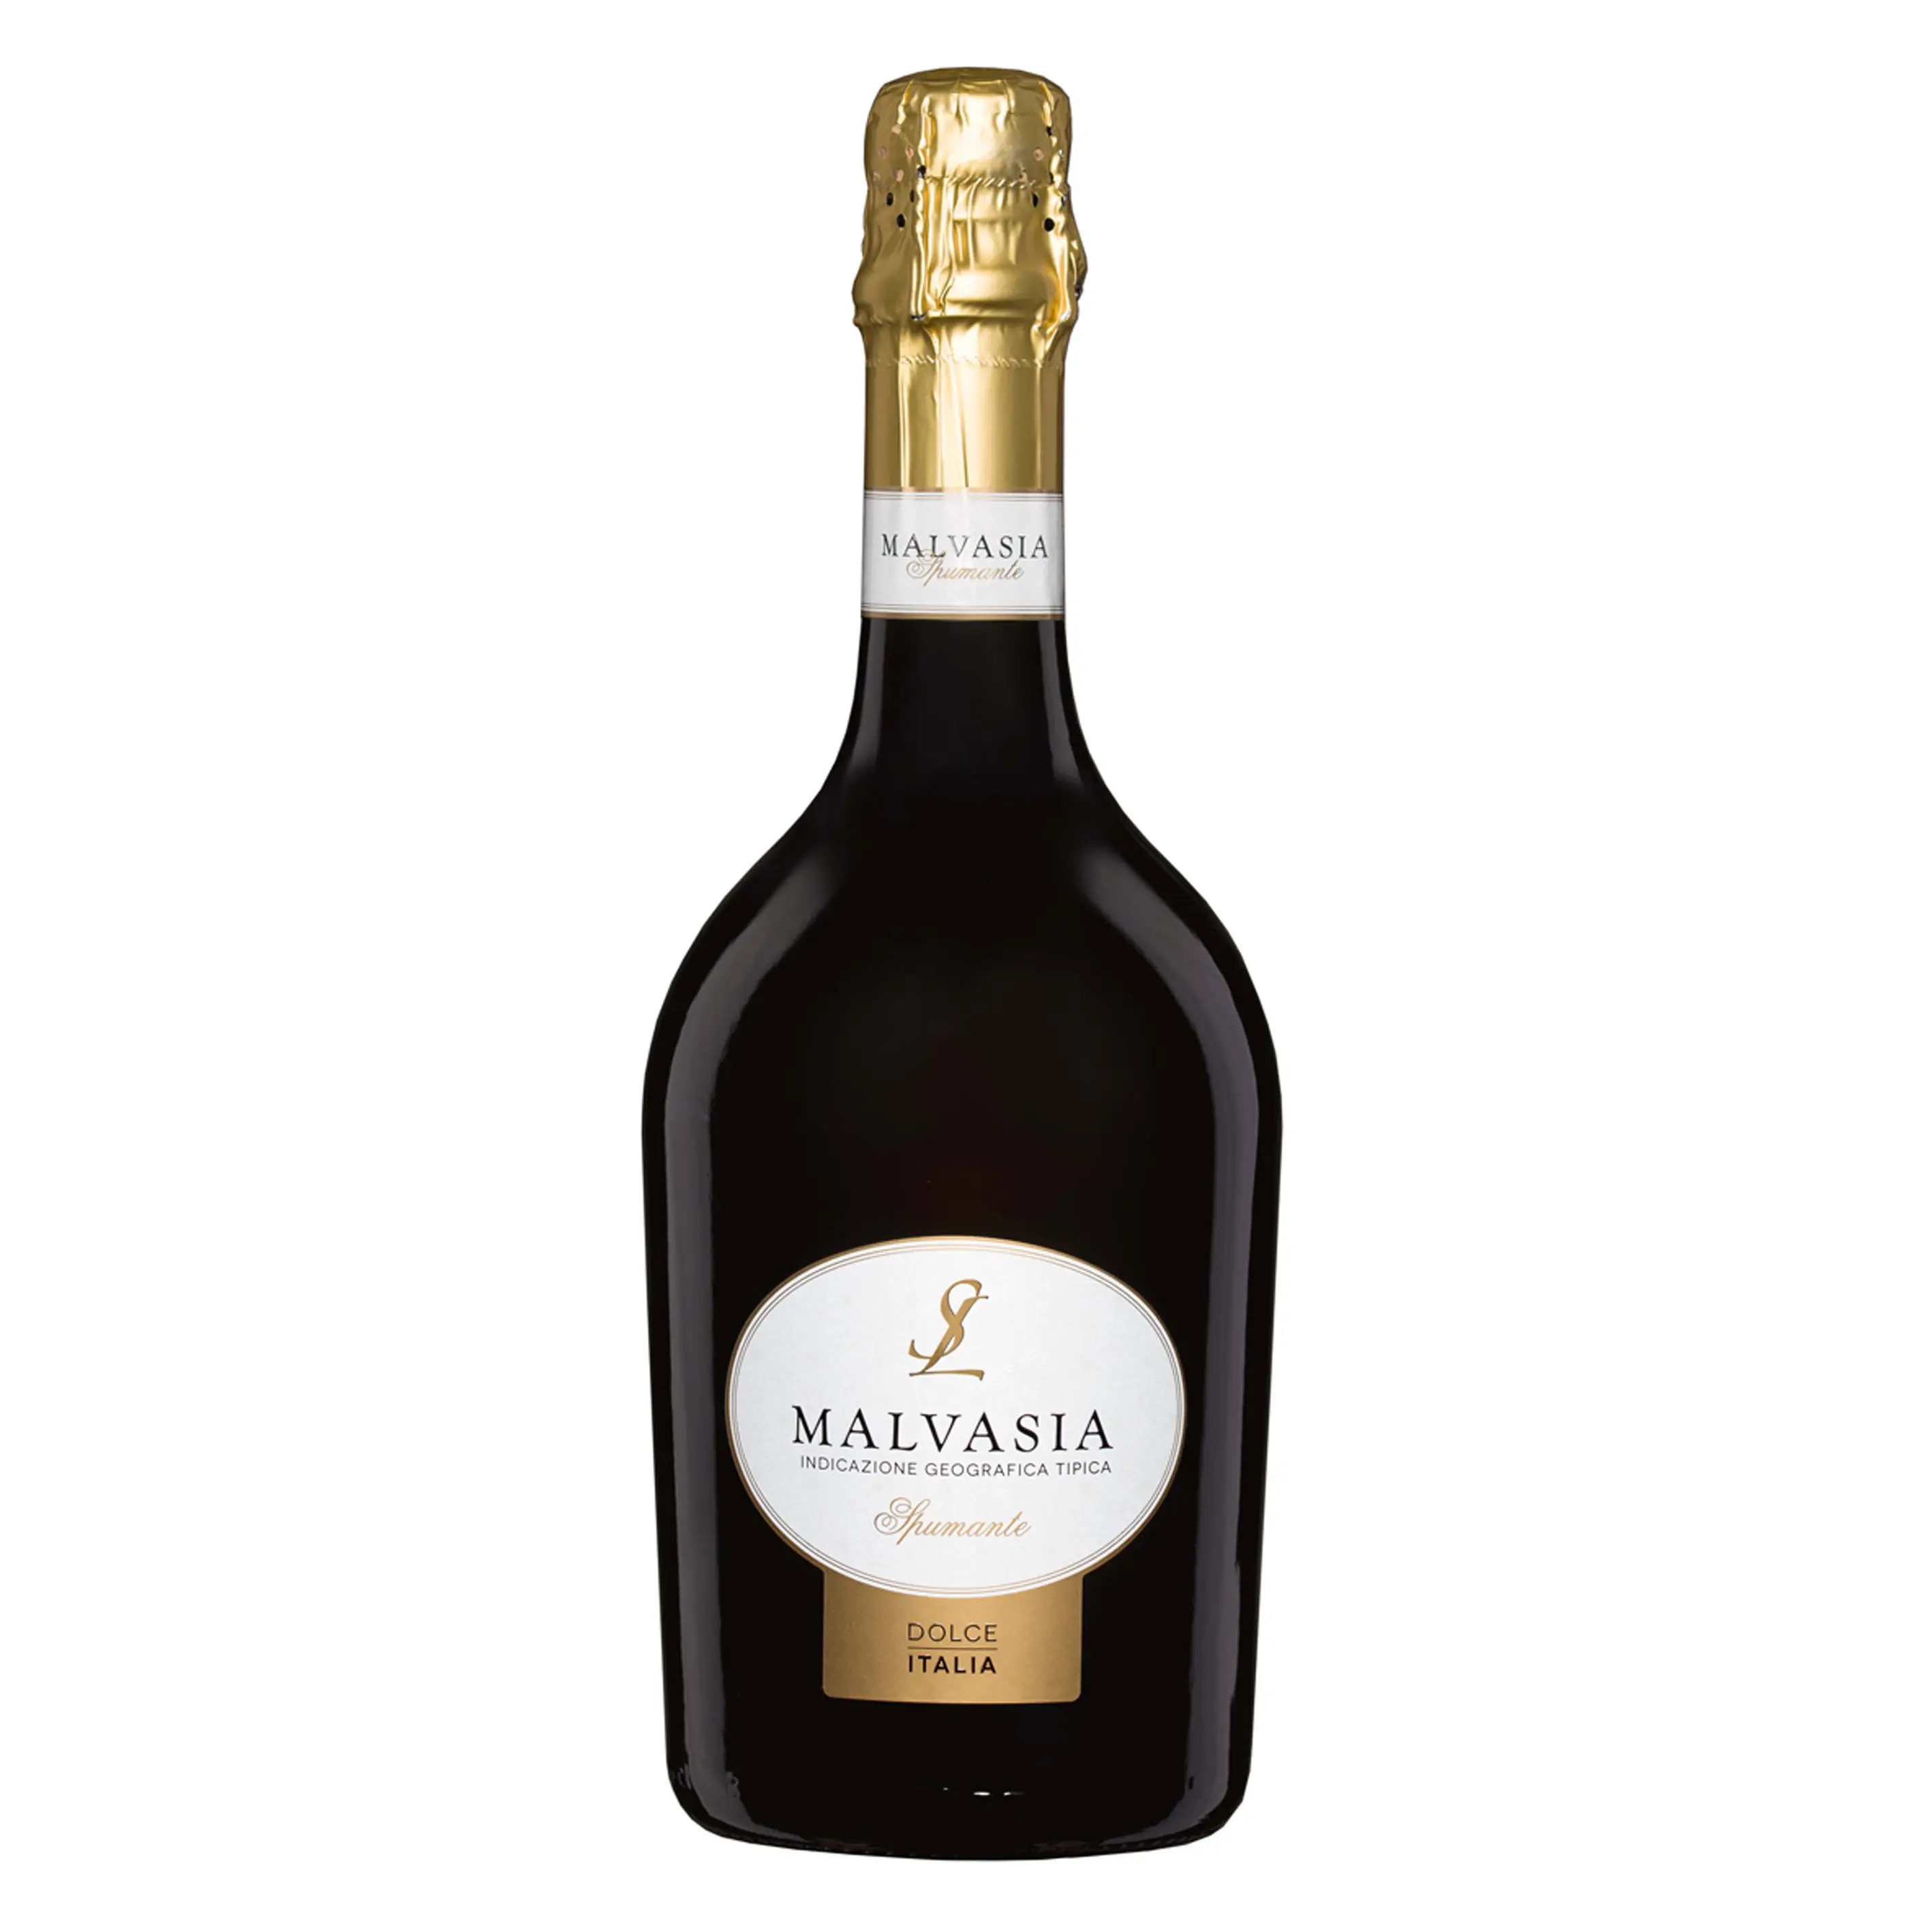 Sgarzi-vino italiano brillante, Luigi Malvasia IGT Emilia Romagna